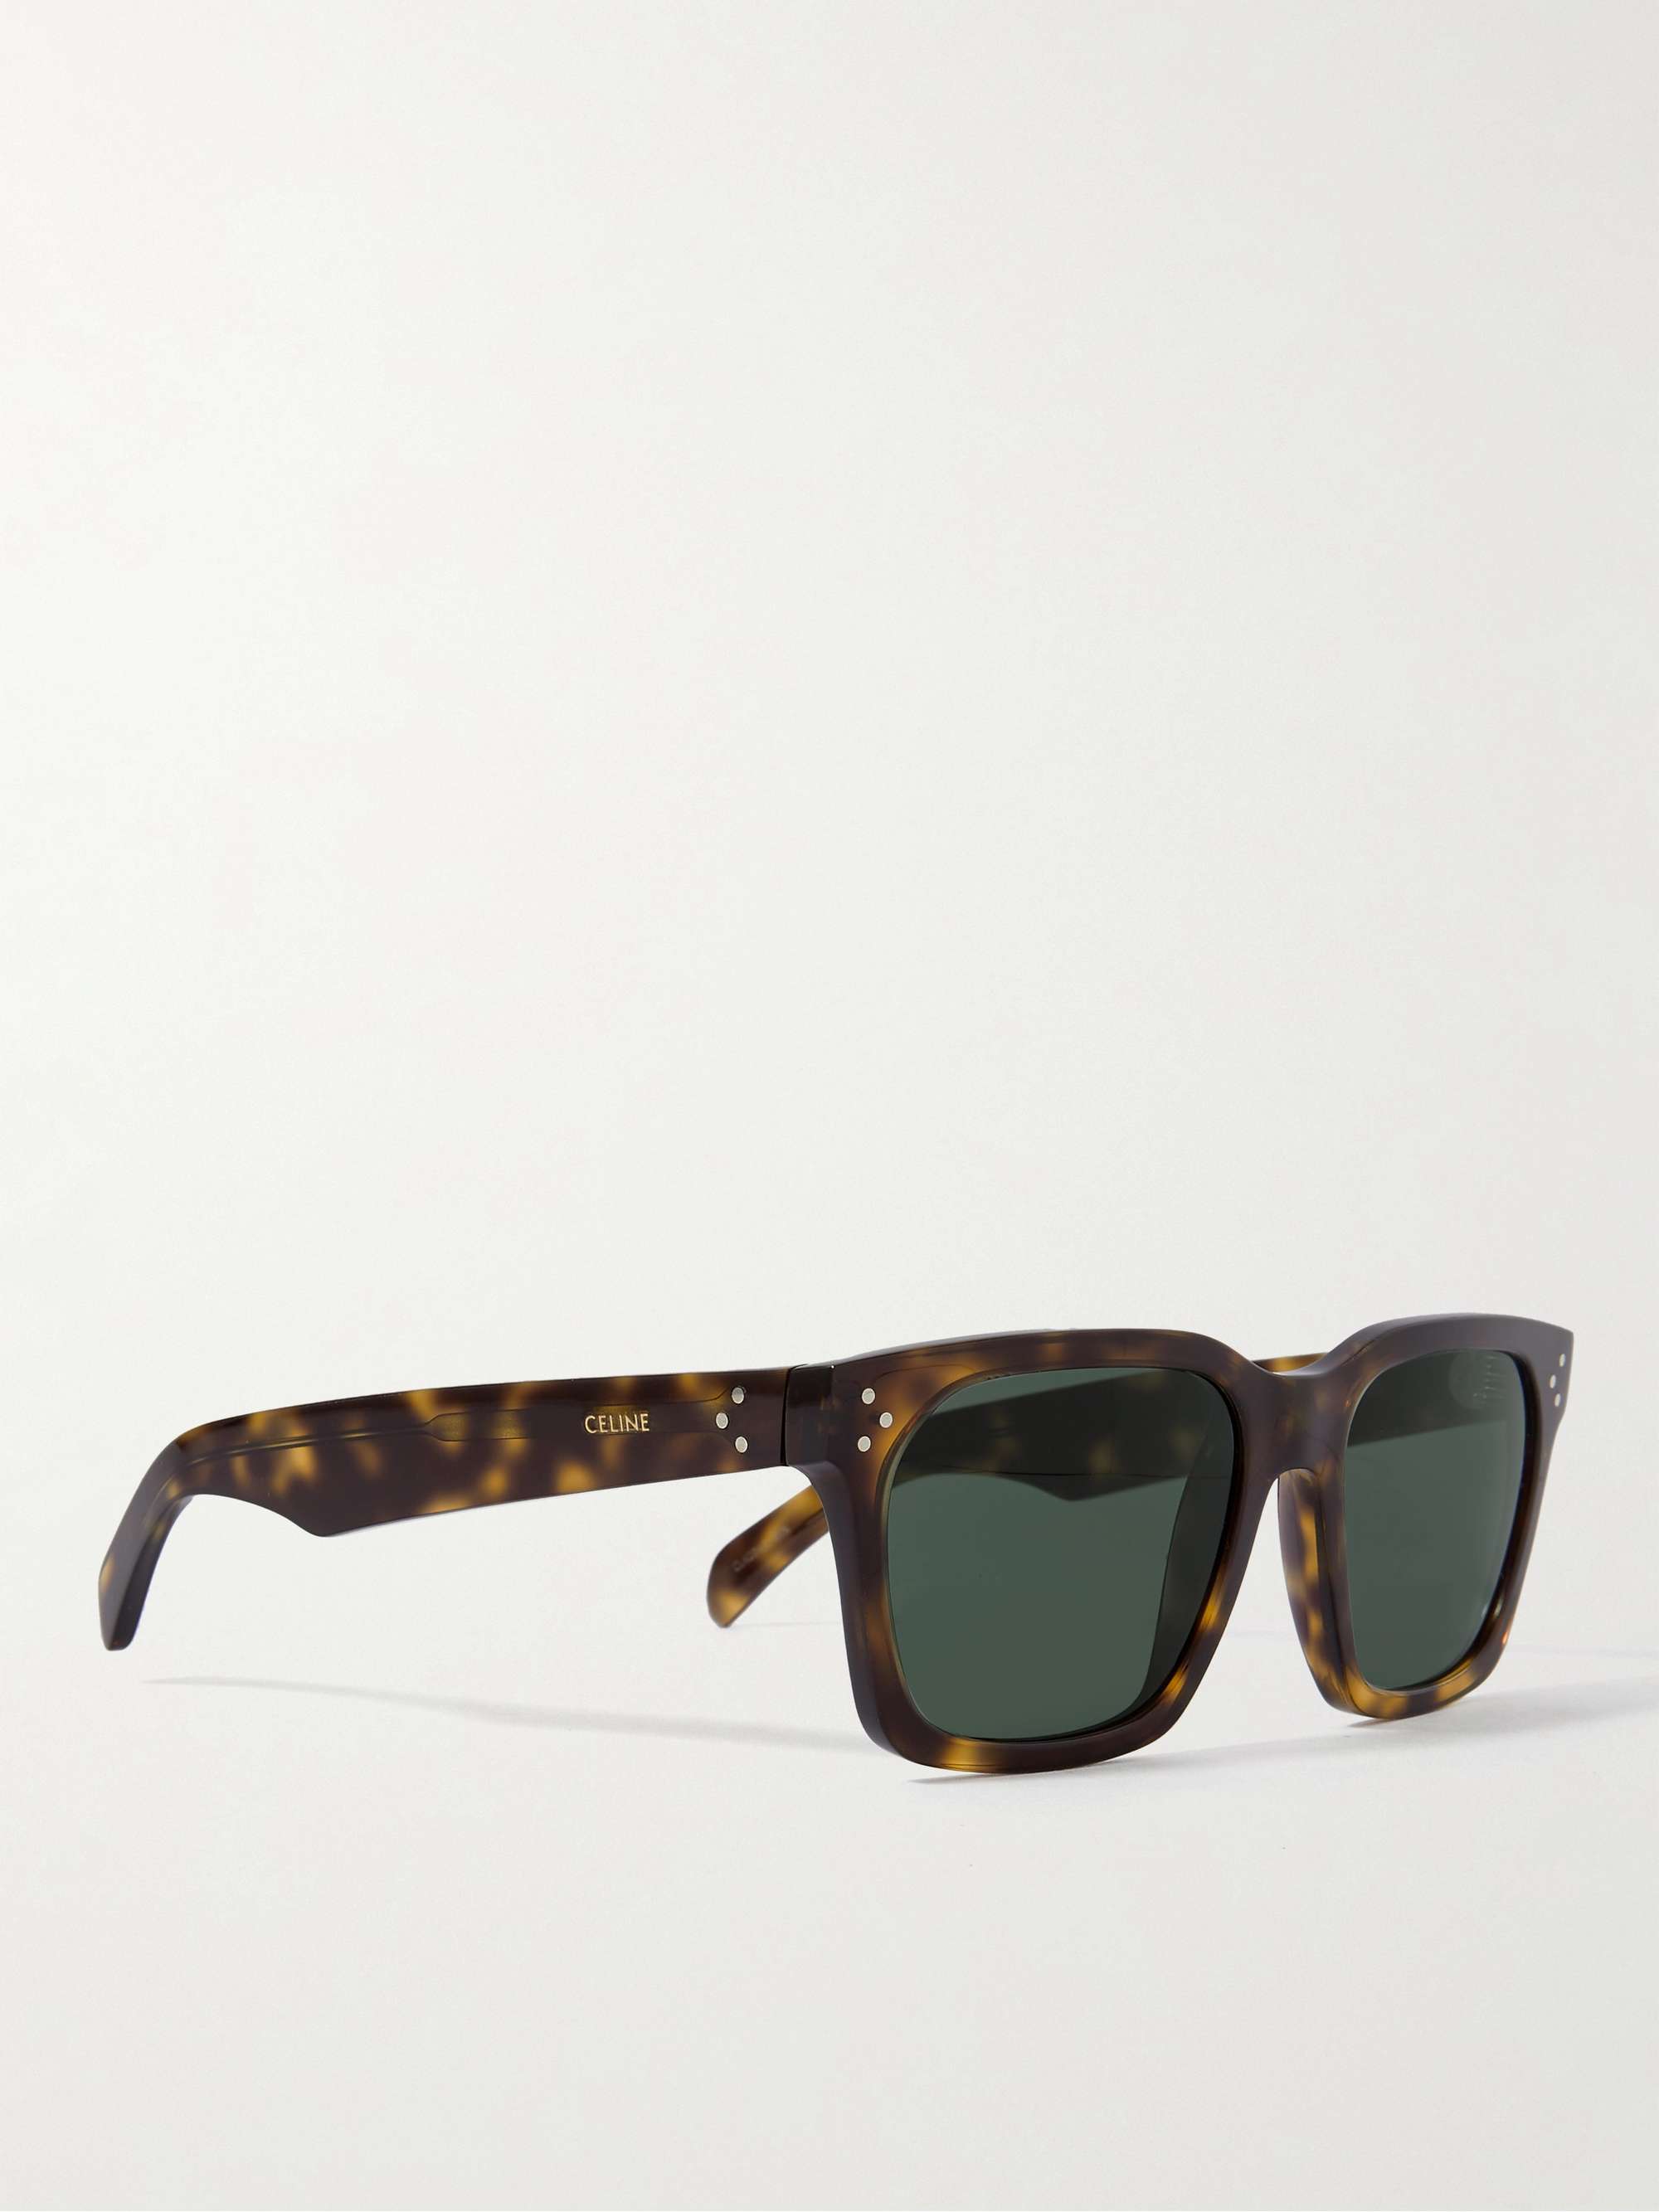 CELINE HOMME Square-Frame Tortoiseshell Acetate Sunglasses